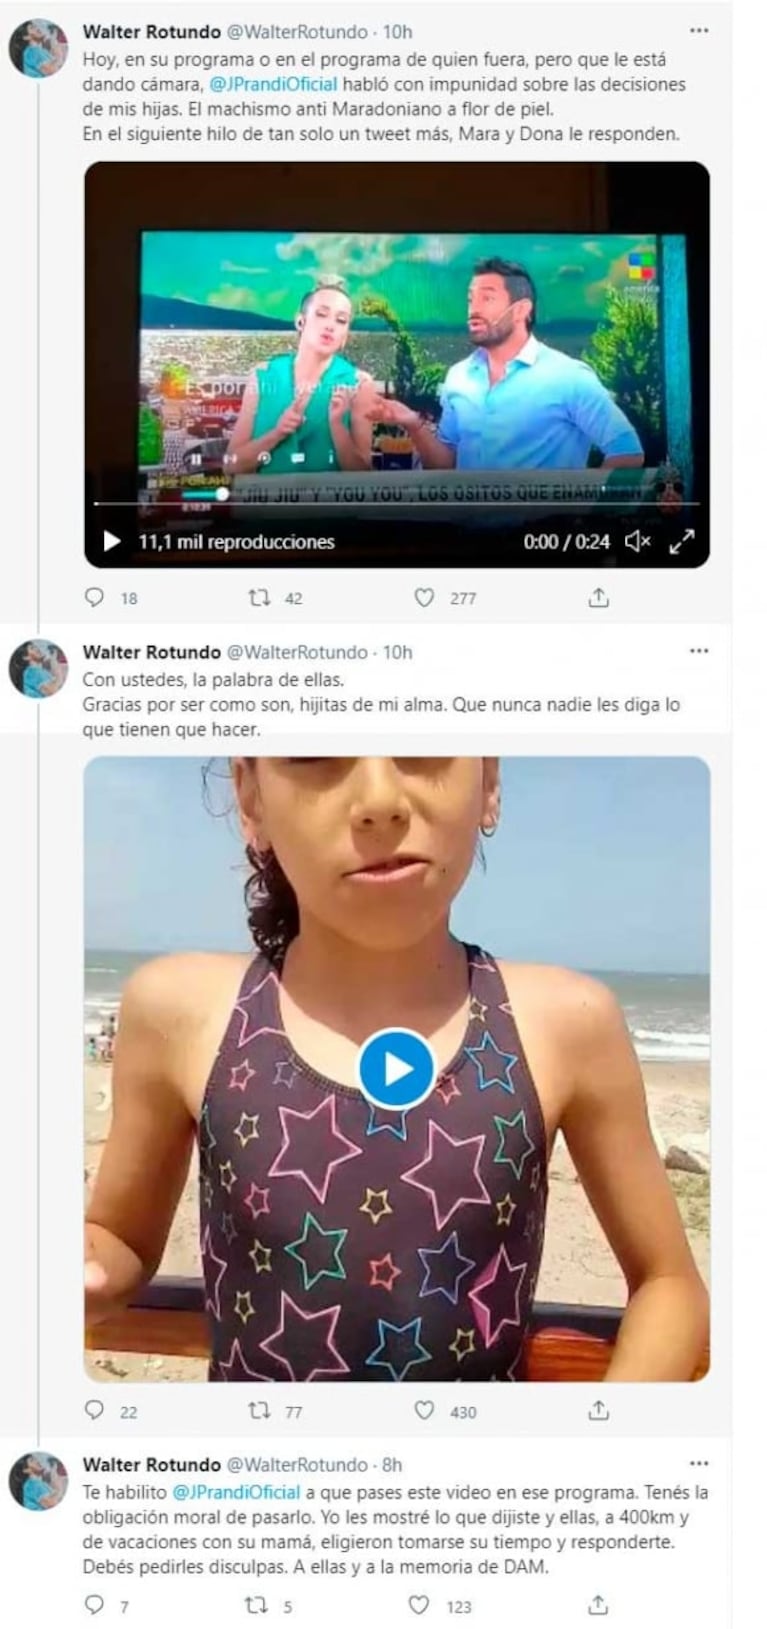 Las nenas bautizadas en honor a Maradona, molestas con Julieta Prandi por cuestionar sus nombres: "Una falta de respeto"